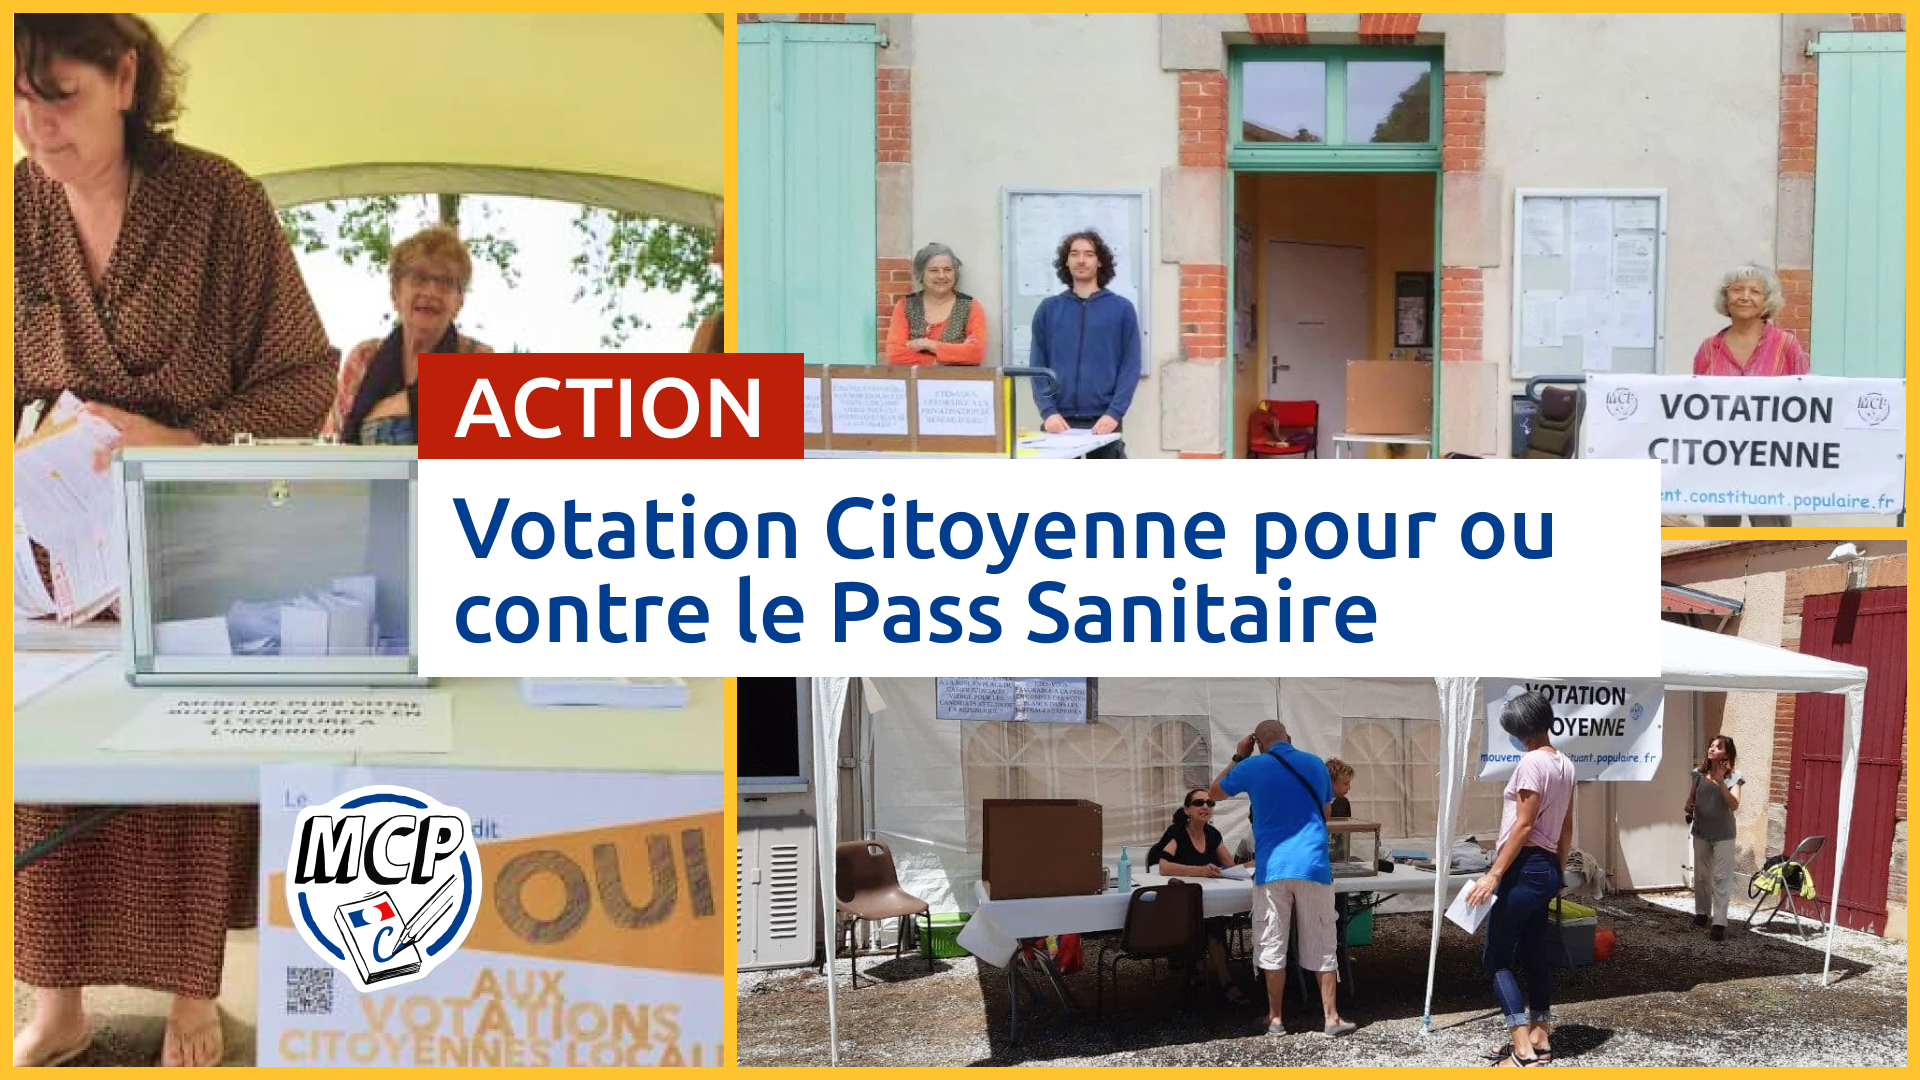 Proposition d’action : Votation Citoyenne pour ou contre le Pass Sanitaire